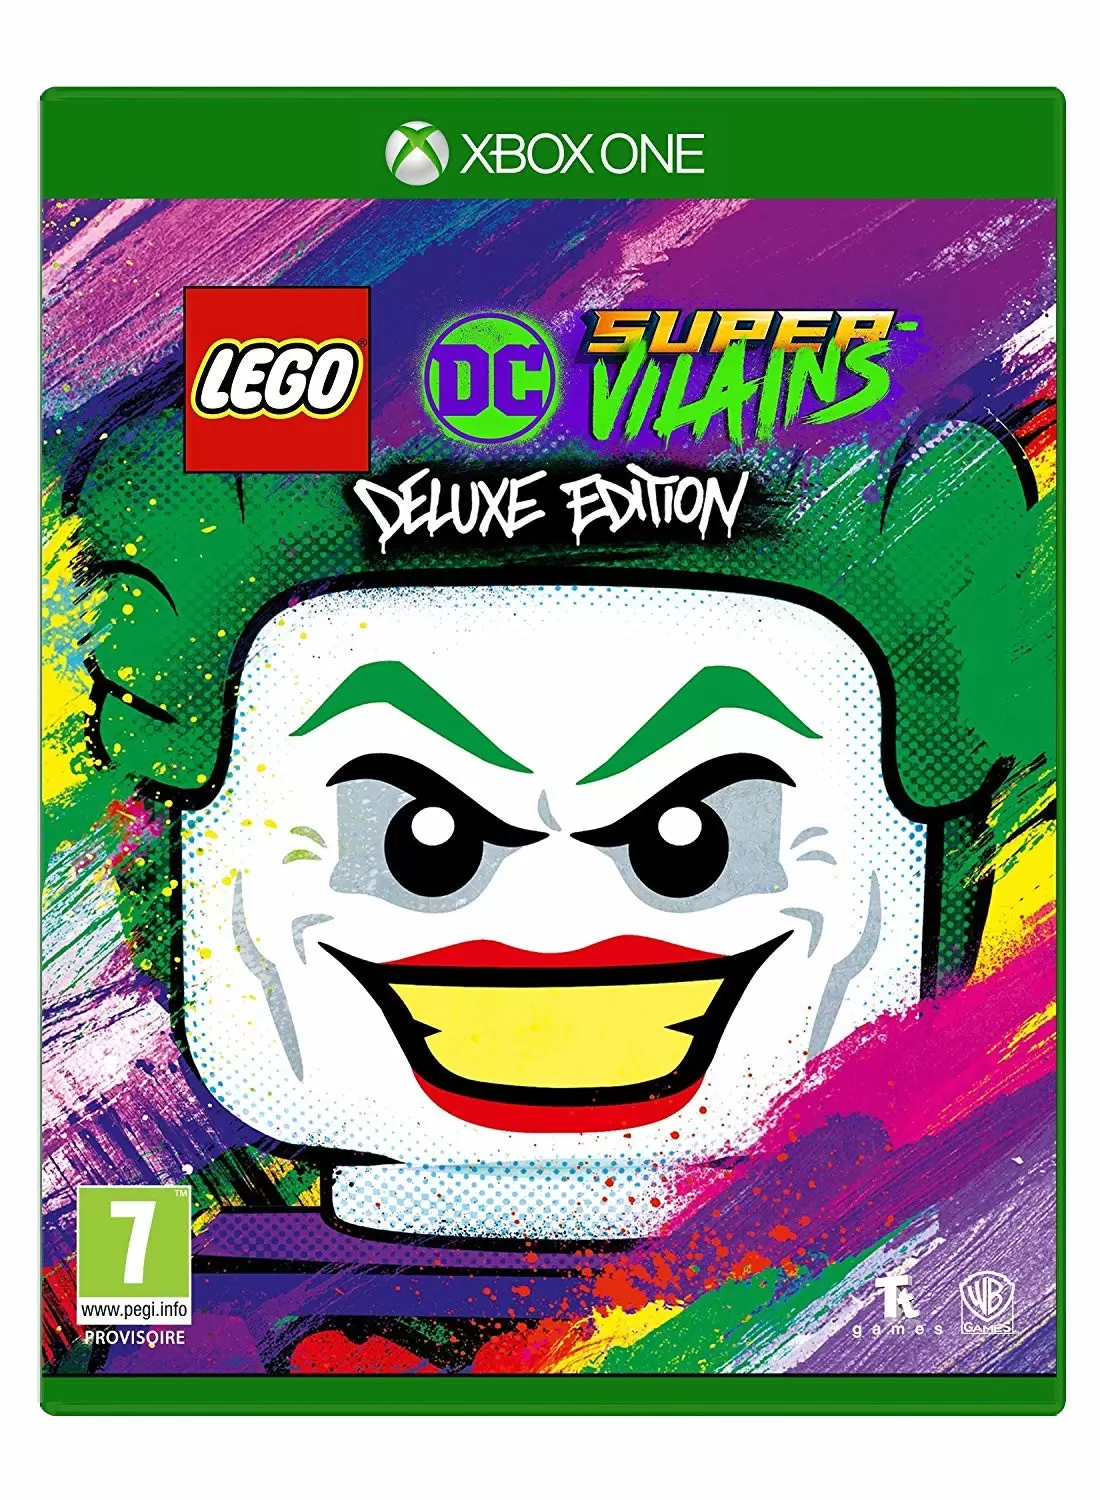 Jeux XBOX One - Lego Dc Super Vilains Deluxe Edition